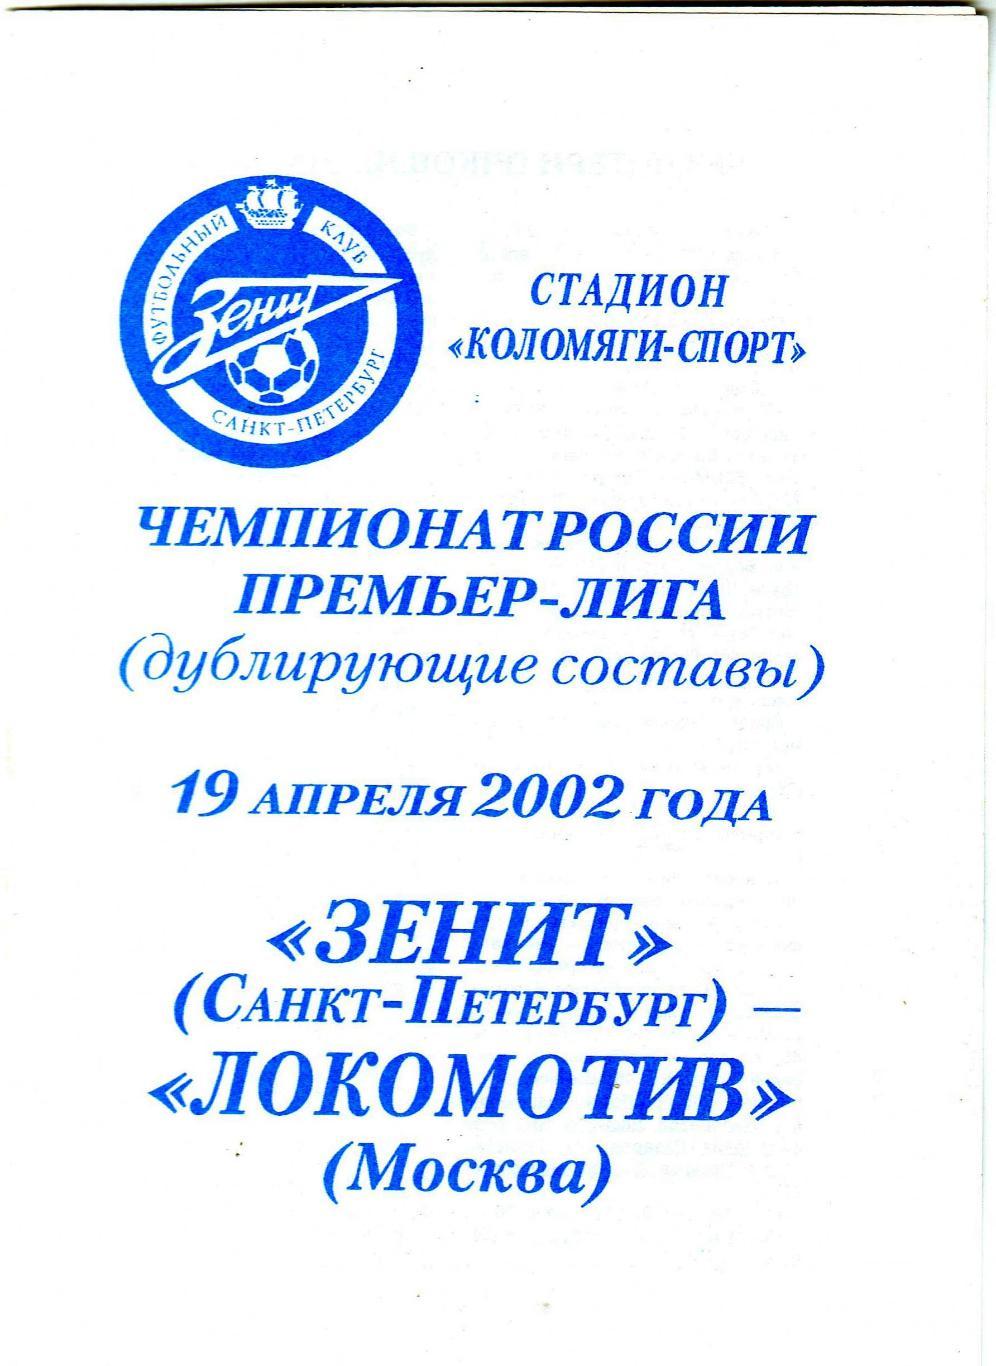 Зенит Санкт-Петербург – Локомотив Москва 19.04.2002 Дублирующие составы